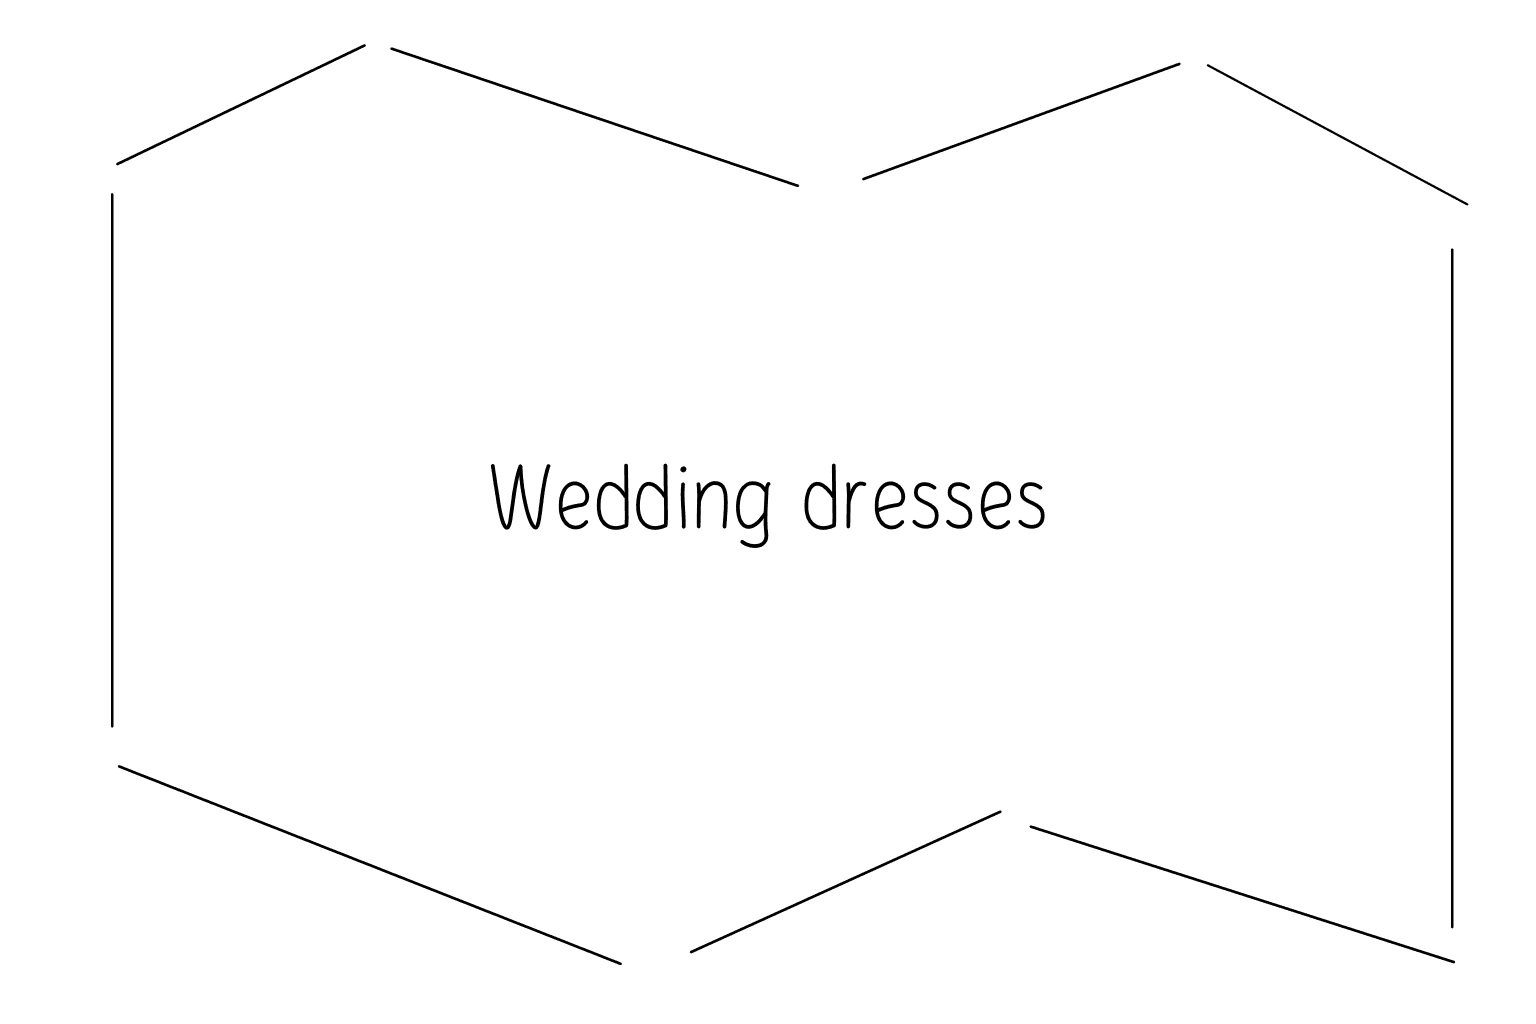 Иллюстрация свадебных платьев